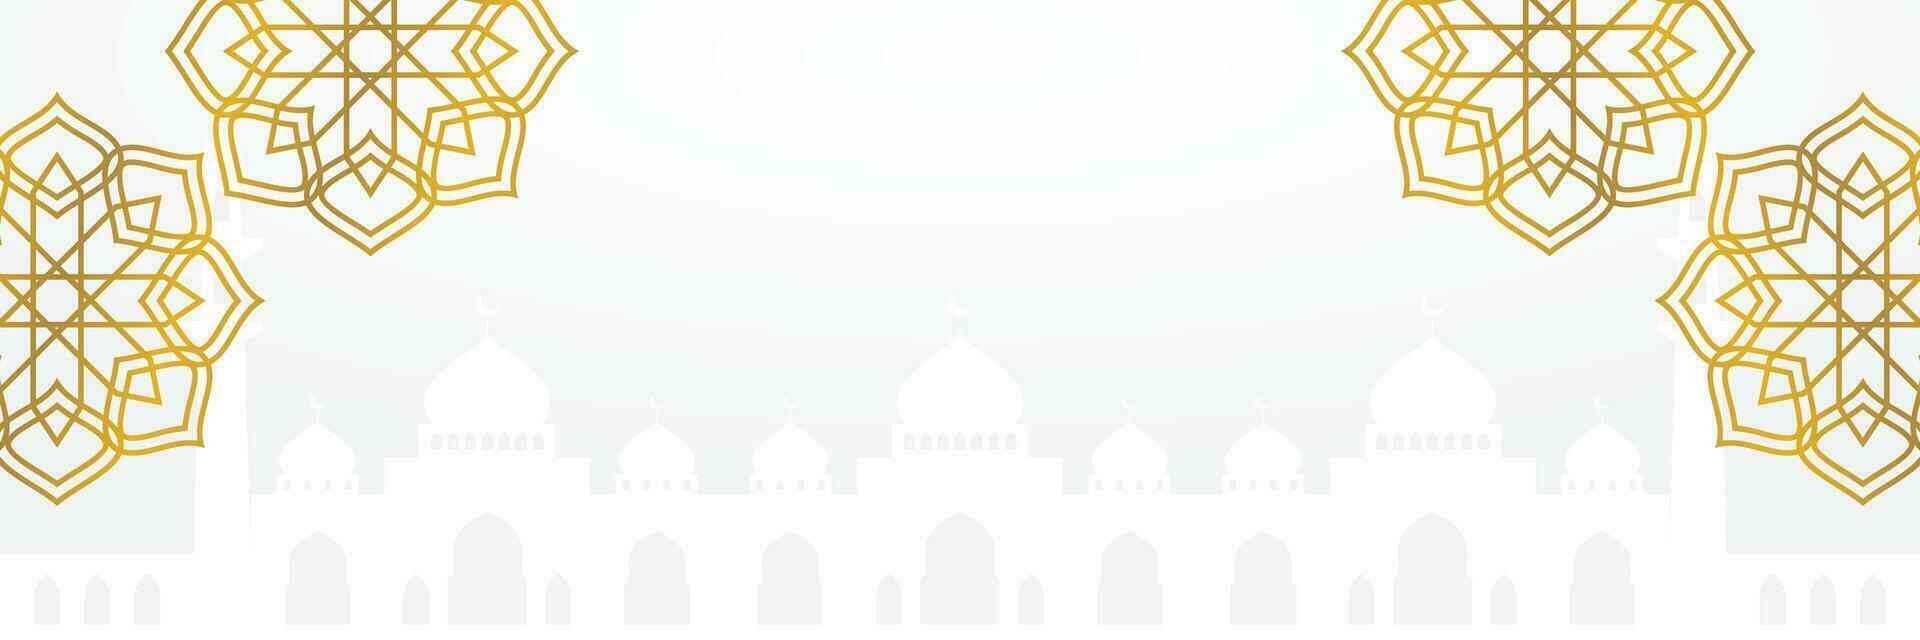 islámico fondo, con hermosa mandala adornos y mezquita siluetas vector modelo para bandera, saludo tarjeta para islámico vacaciones, eid al fitr, ramadán, eid al-adha